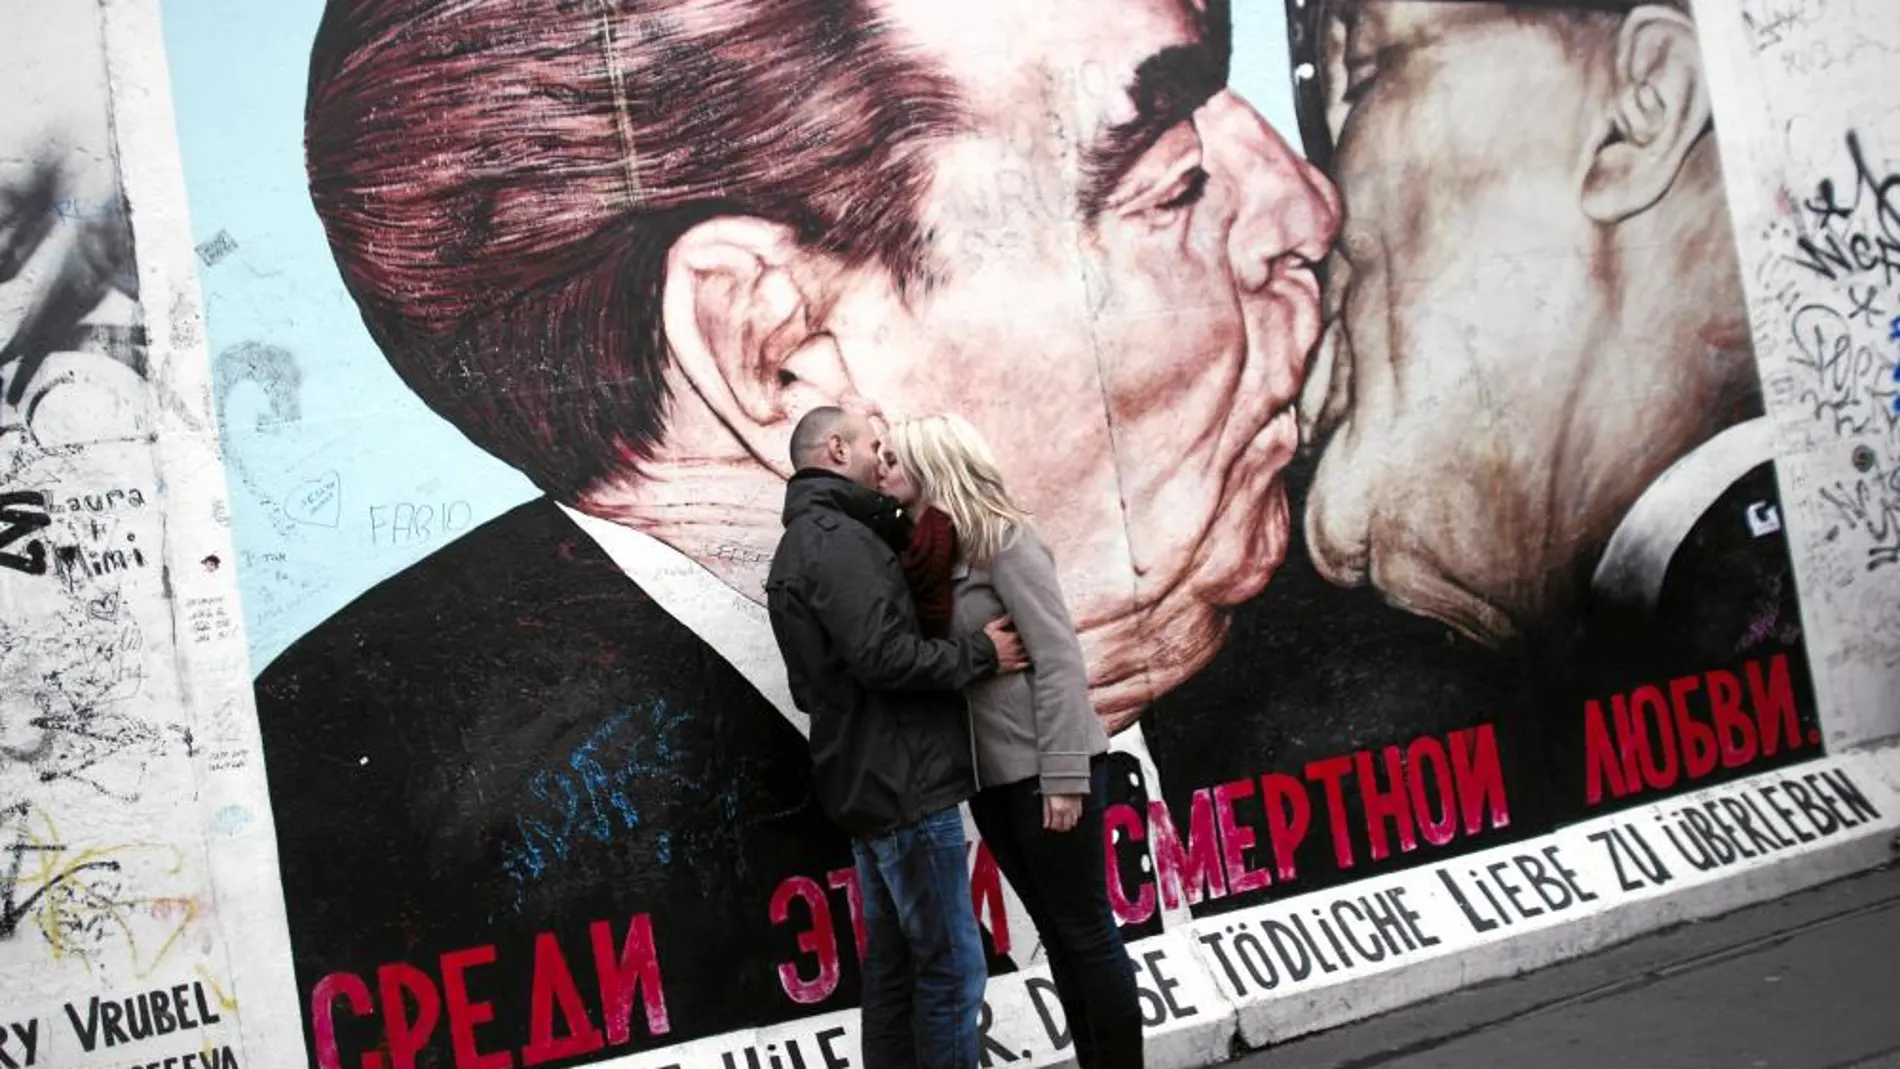 Una de las imágenes más famosas del muro: el beso del líder soviético Leonid Brezhnev (izq.) y Erich Honecker, de la RDA